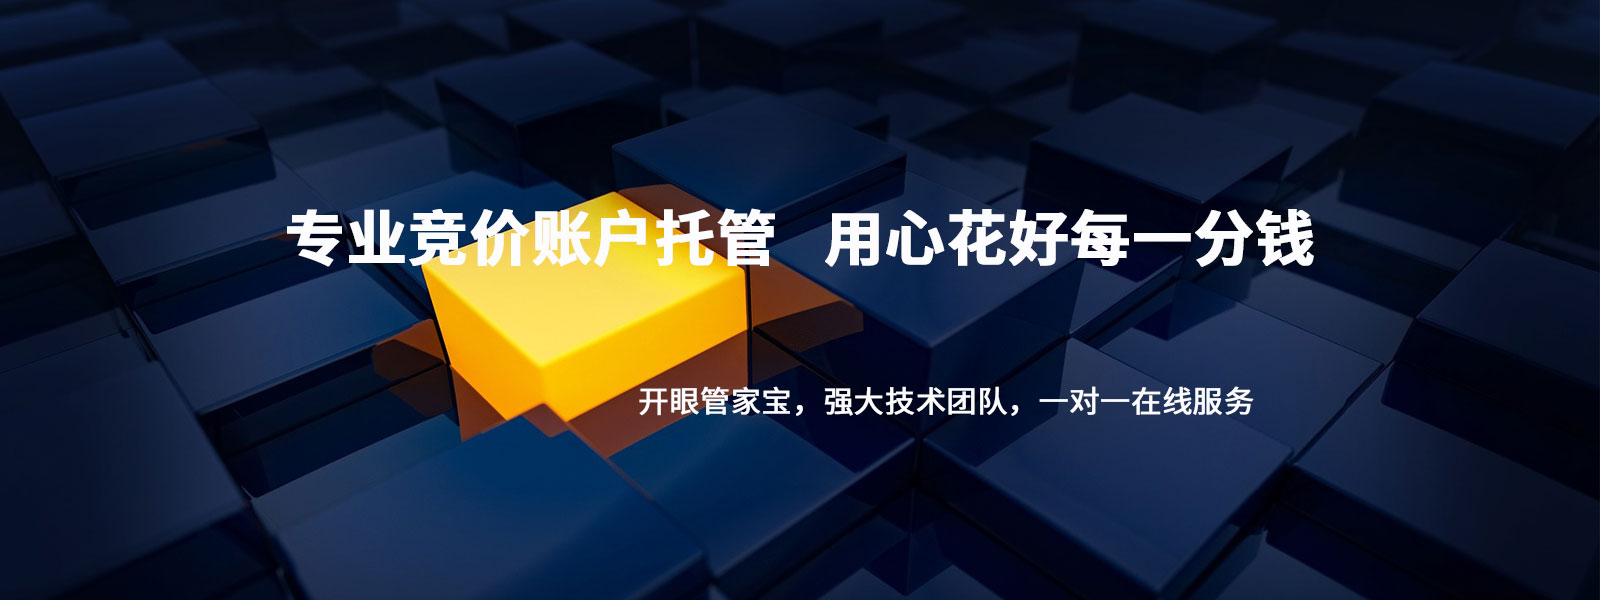 上海开眼信息科技有限公司